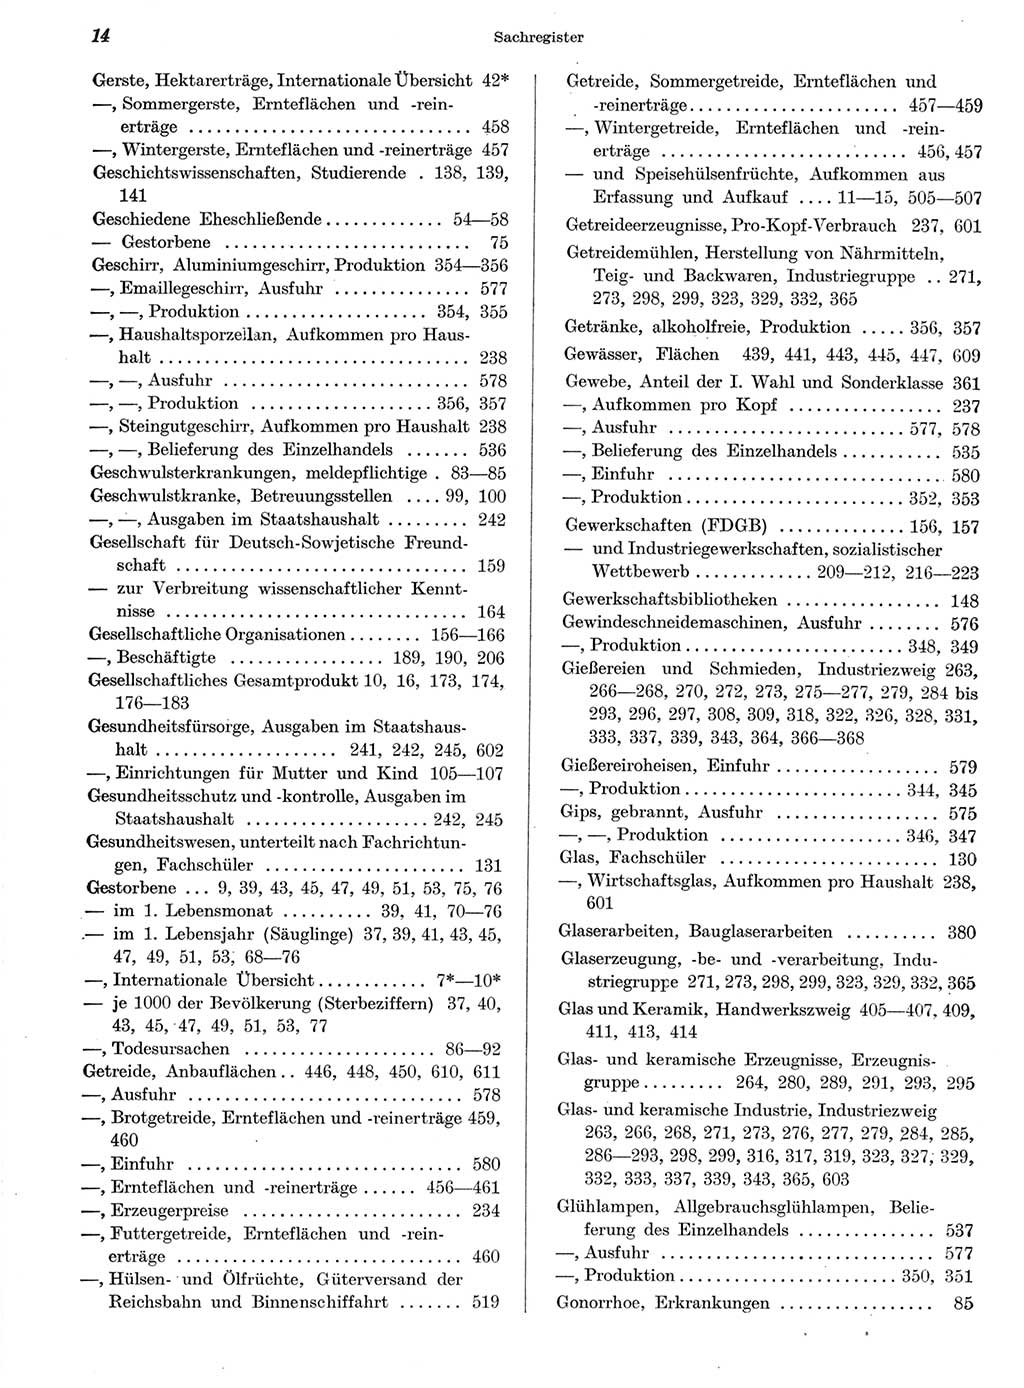 Statistisches Jahrbuch der Deutschen Demokratischen Republik (DDR) 1959, Seite 14 (Stat. Jb. DDR 1959, S. 14)